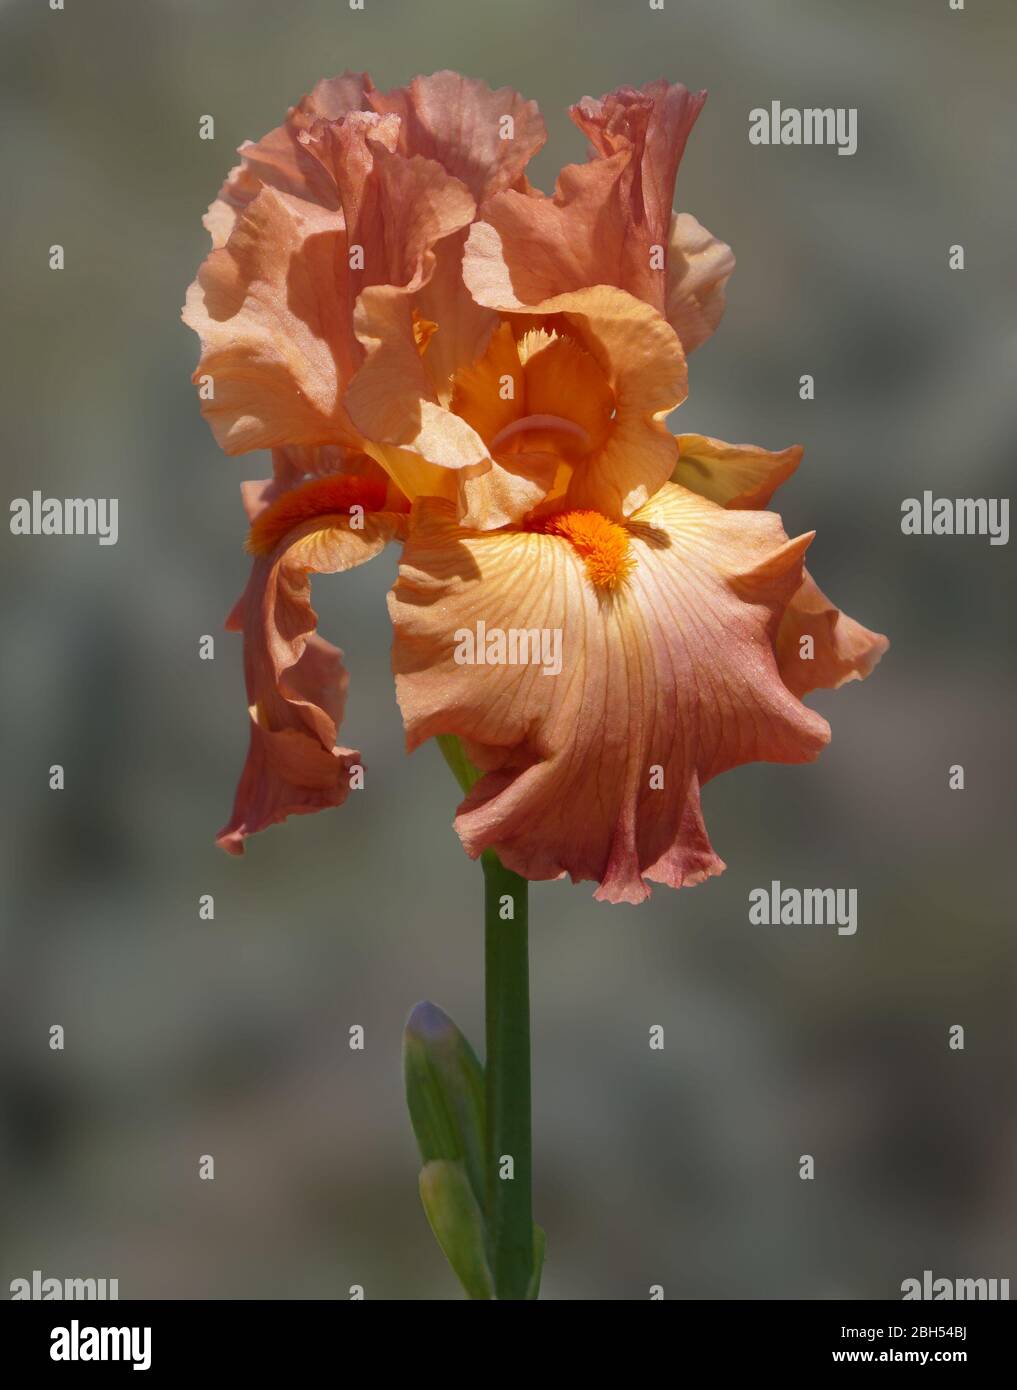 Primer plano de una flor de iris con pétalos de naranja y una barba naranja brillante. Foto de stock